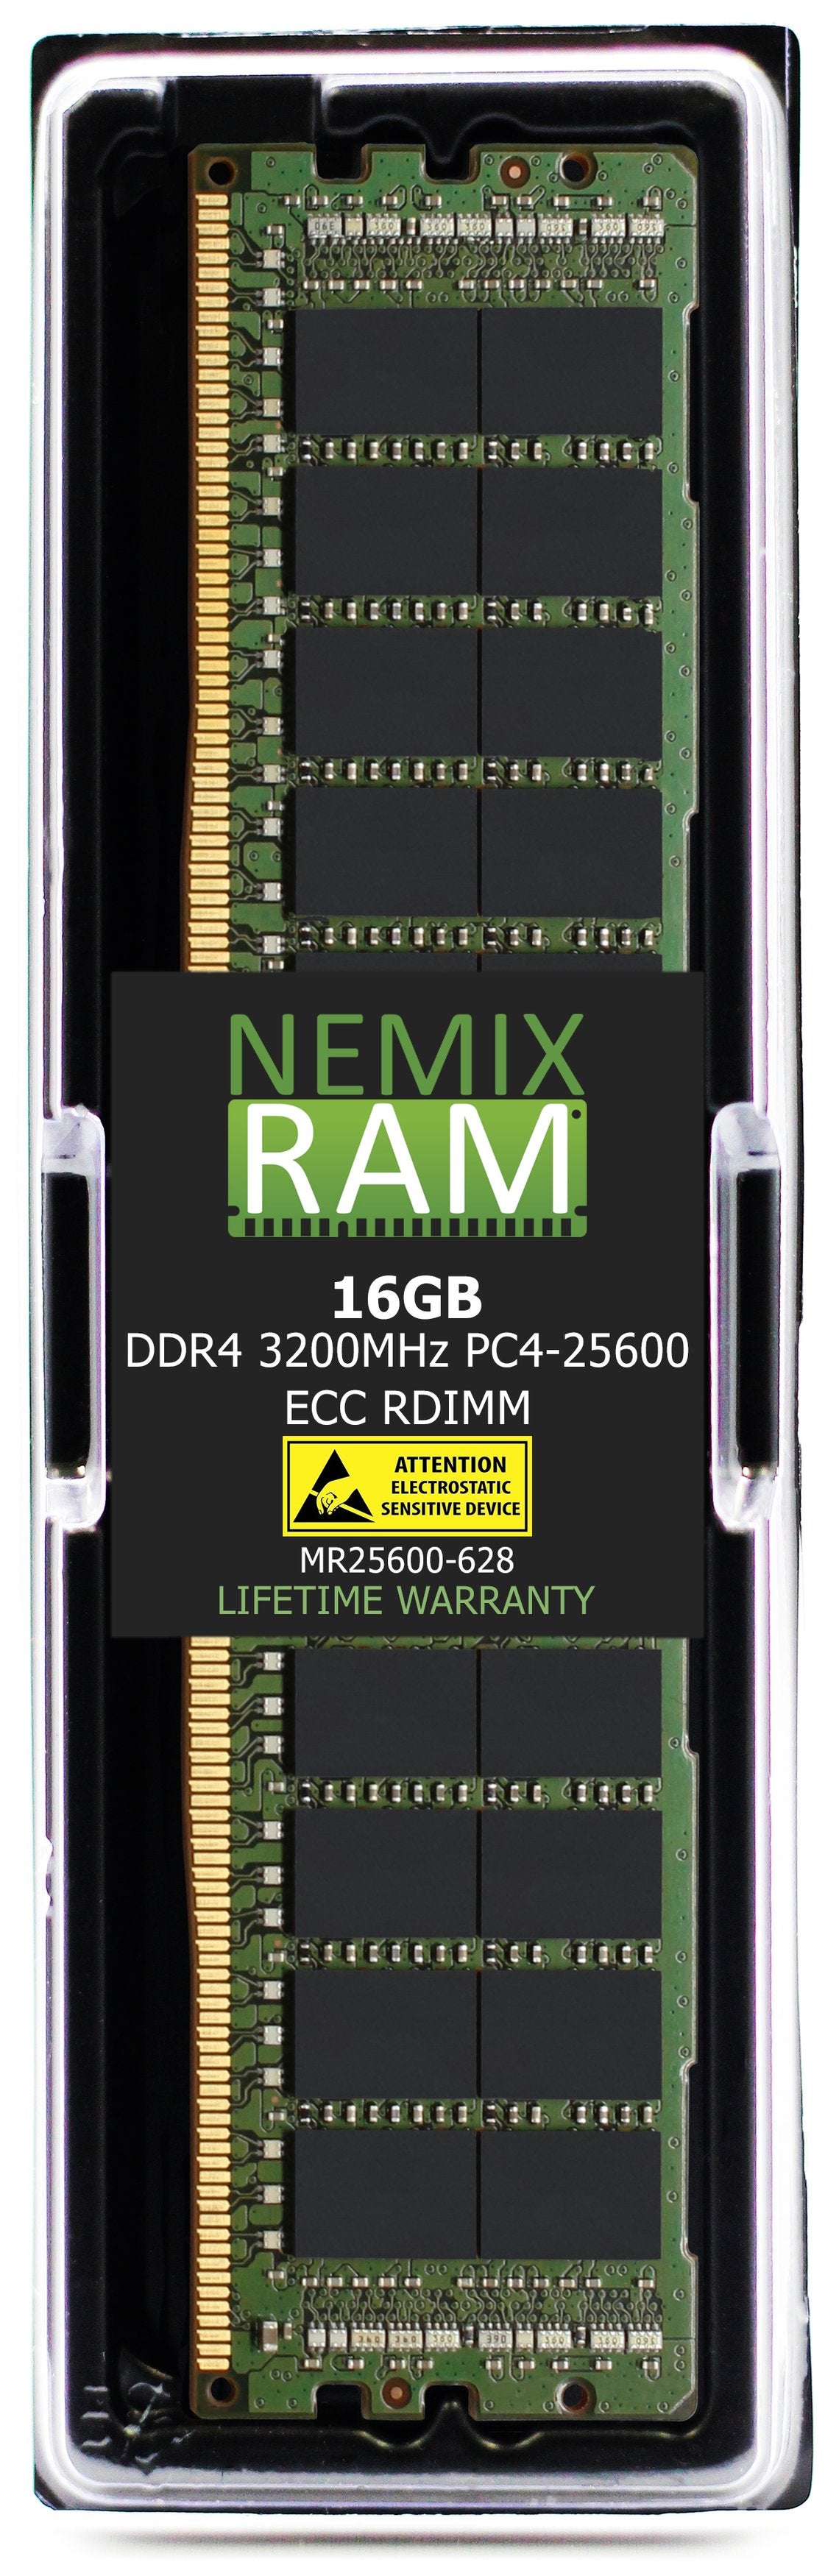 16GB DDR4 3200MHZ PC4-25600 VLP RDIMM Compatible with Supermicro MEM-DR416L-CV01-ER32